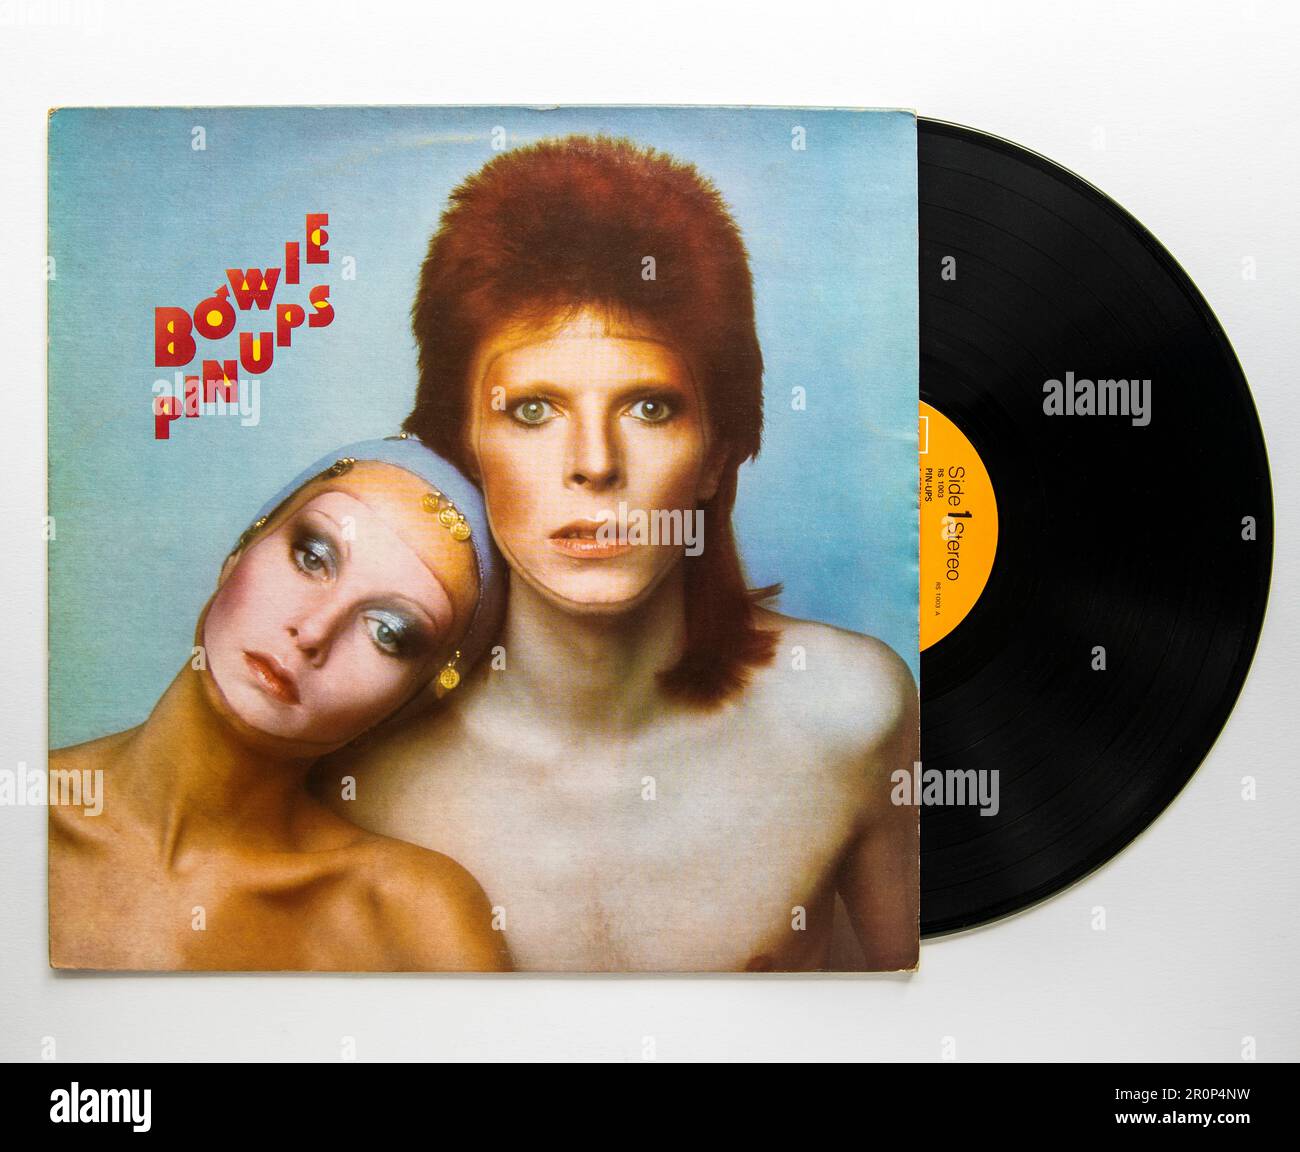 LP couverture et vinyle de PIN UPS, le septième album studio de David Bowie, qui a été sorti en 1973 Banque D'Images